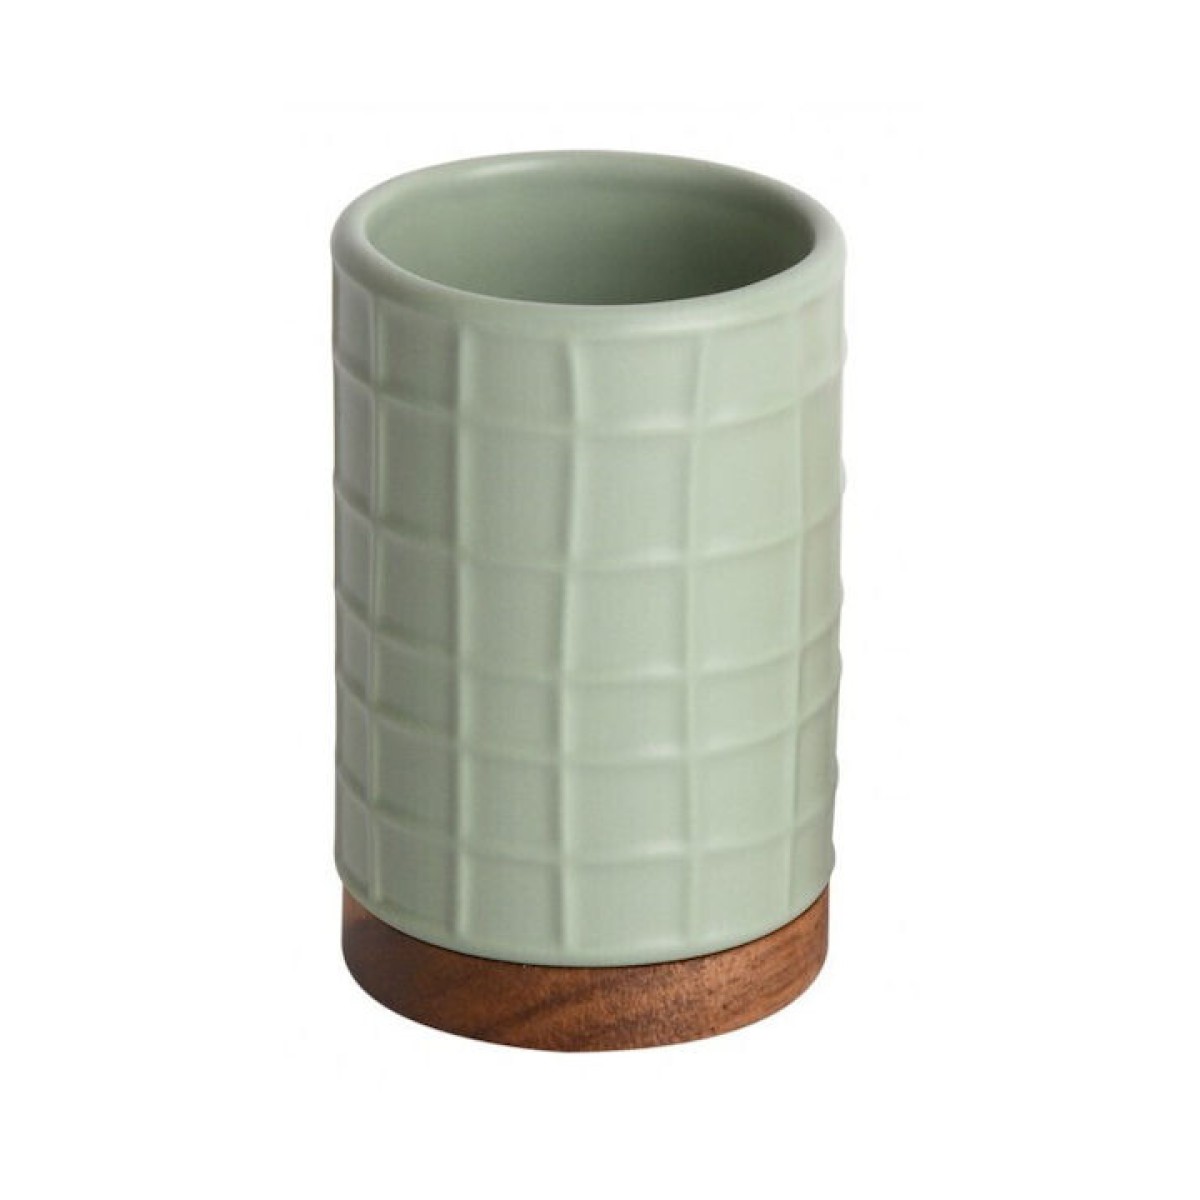 Ποτήρι Οδοντόβουρτσας (Φ7x11) Κεραμικό με ανάγλυφο σχέδιο σε παστέλ πράσινο χρώμα & Βάση Bamboo Marva Adel 478203